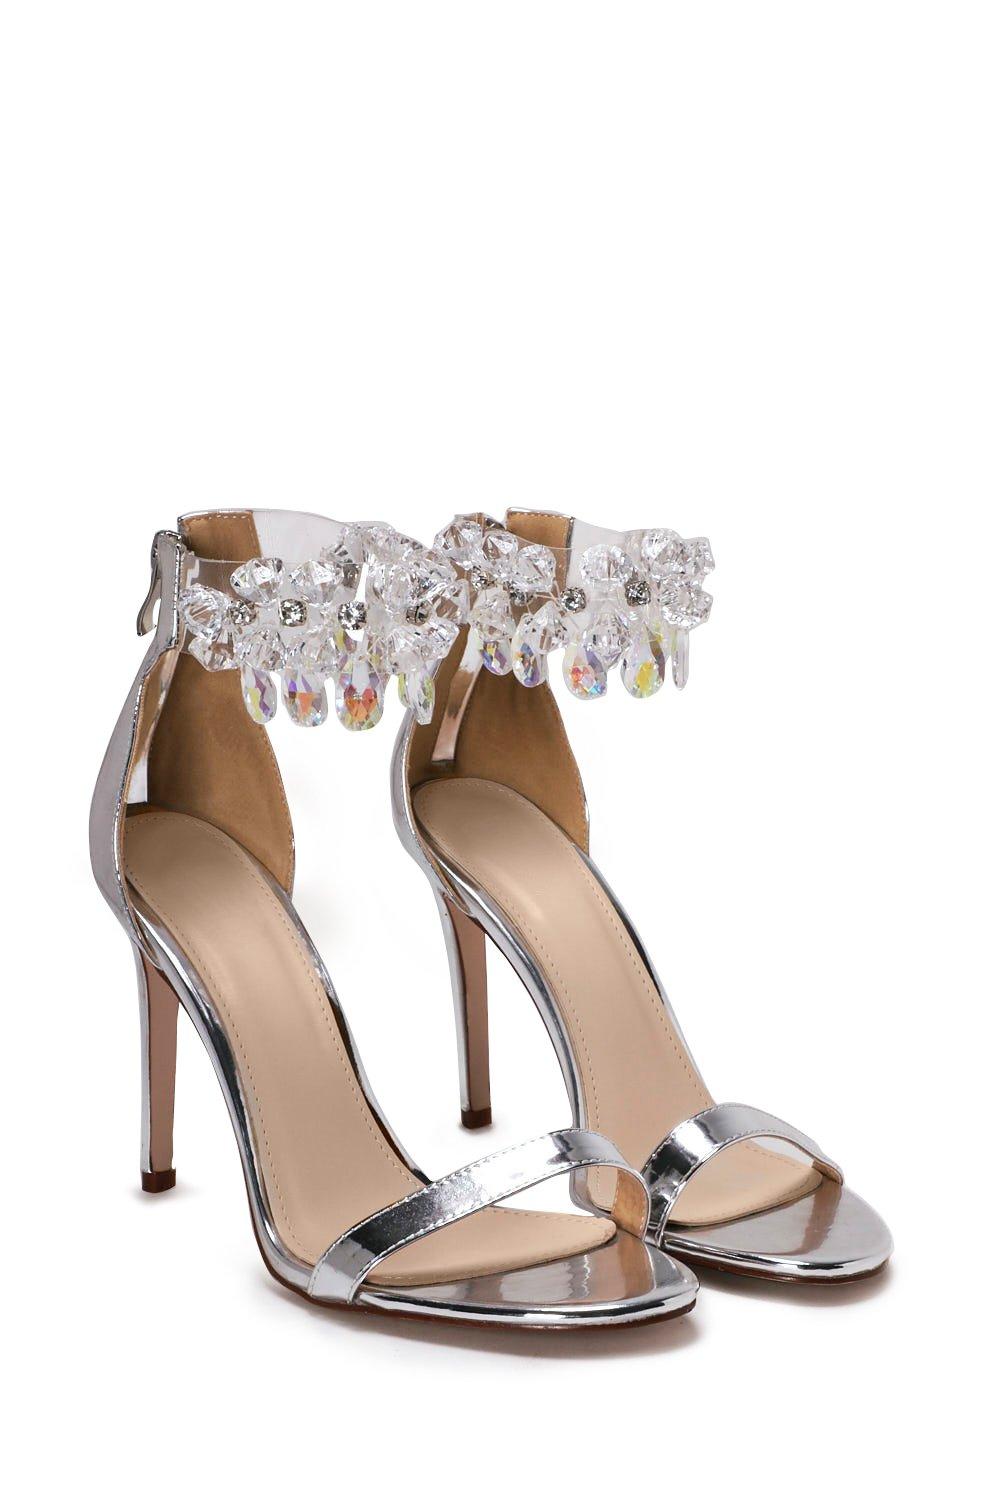 diamond embellished heels